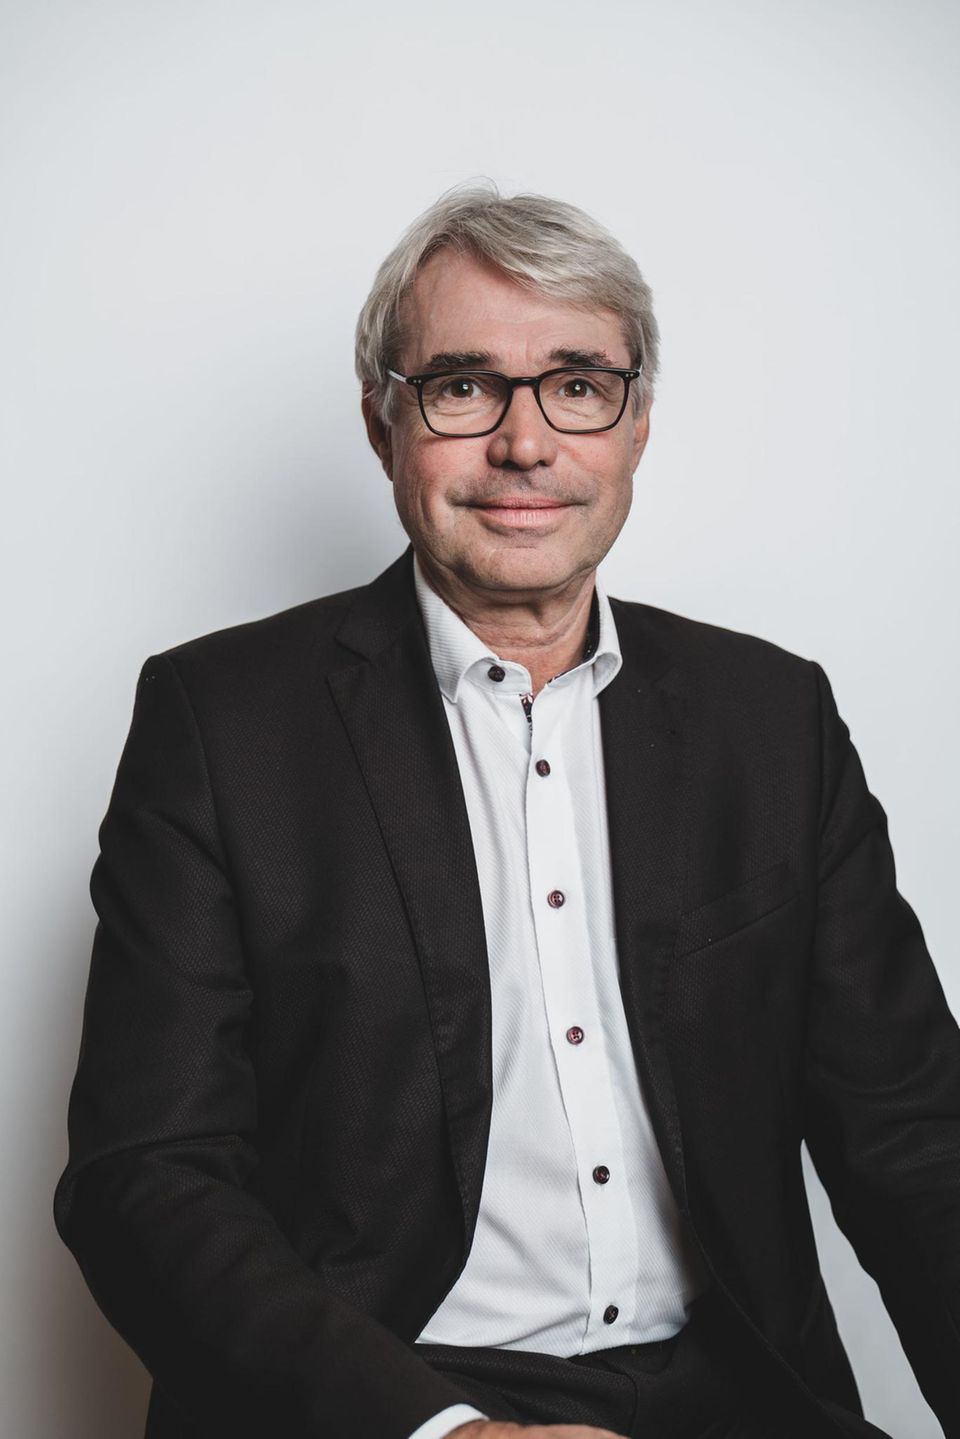 Carl-Julius Cronenberg ist mittelstandspolitischer Sprecher der FDP-Bundestagsfraktion und geschäftsführender Gesellschafter des Unternehmens Julius Cronenberg Sophienhammer     